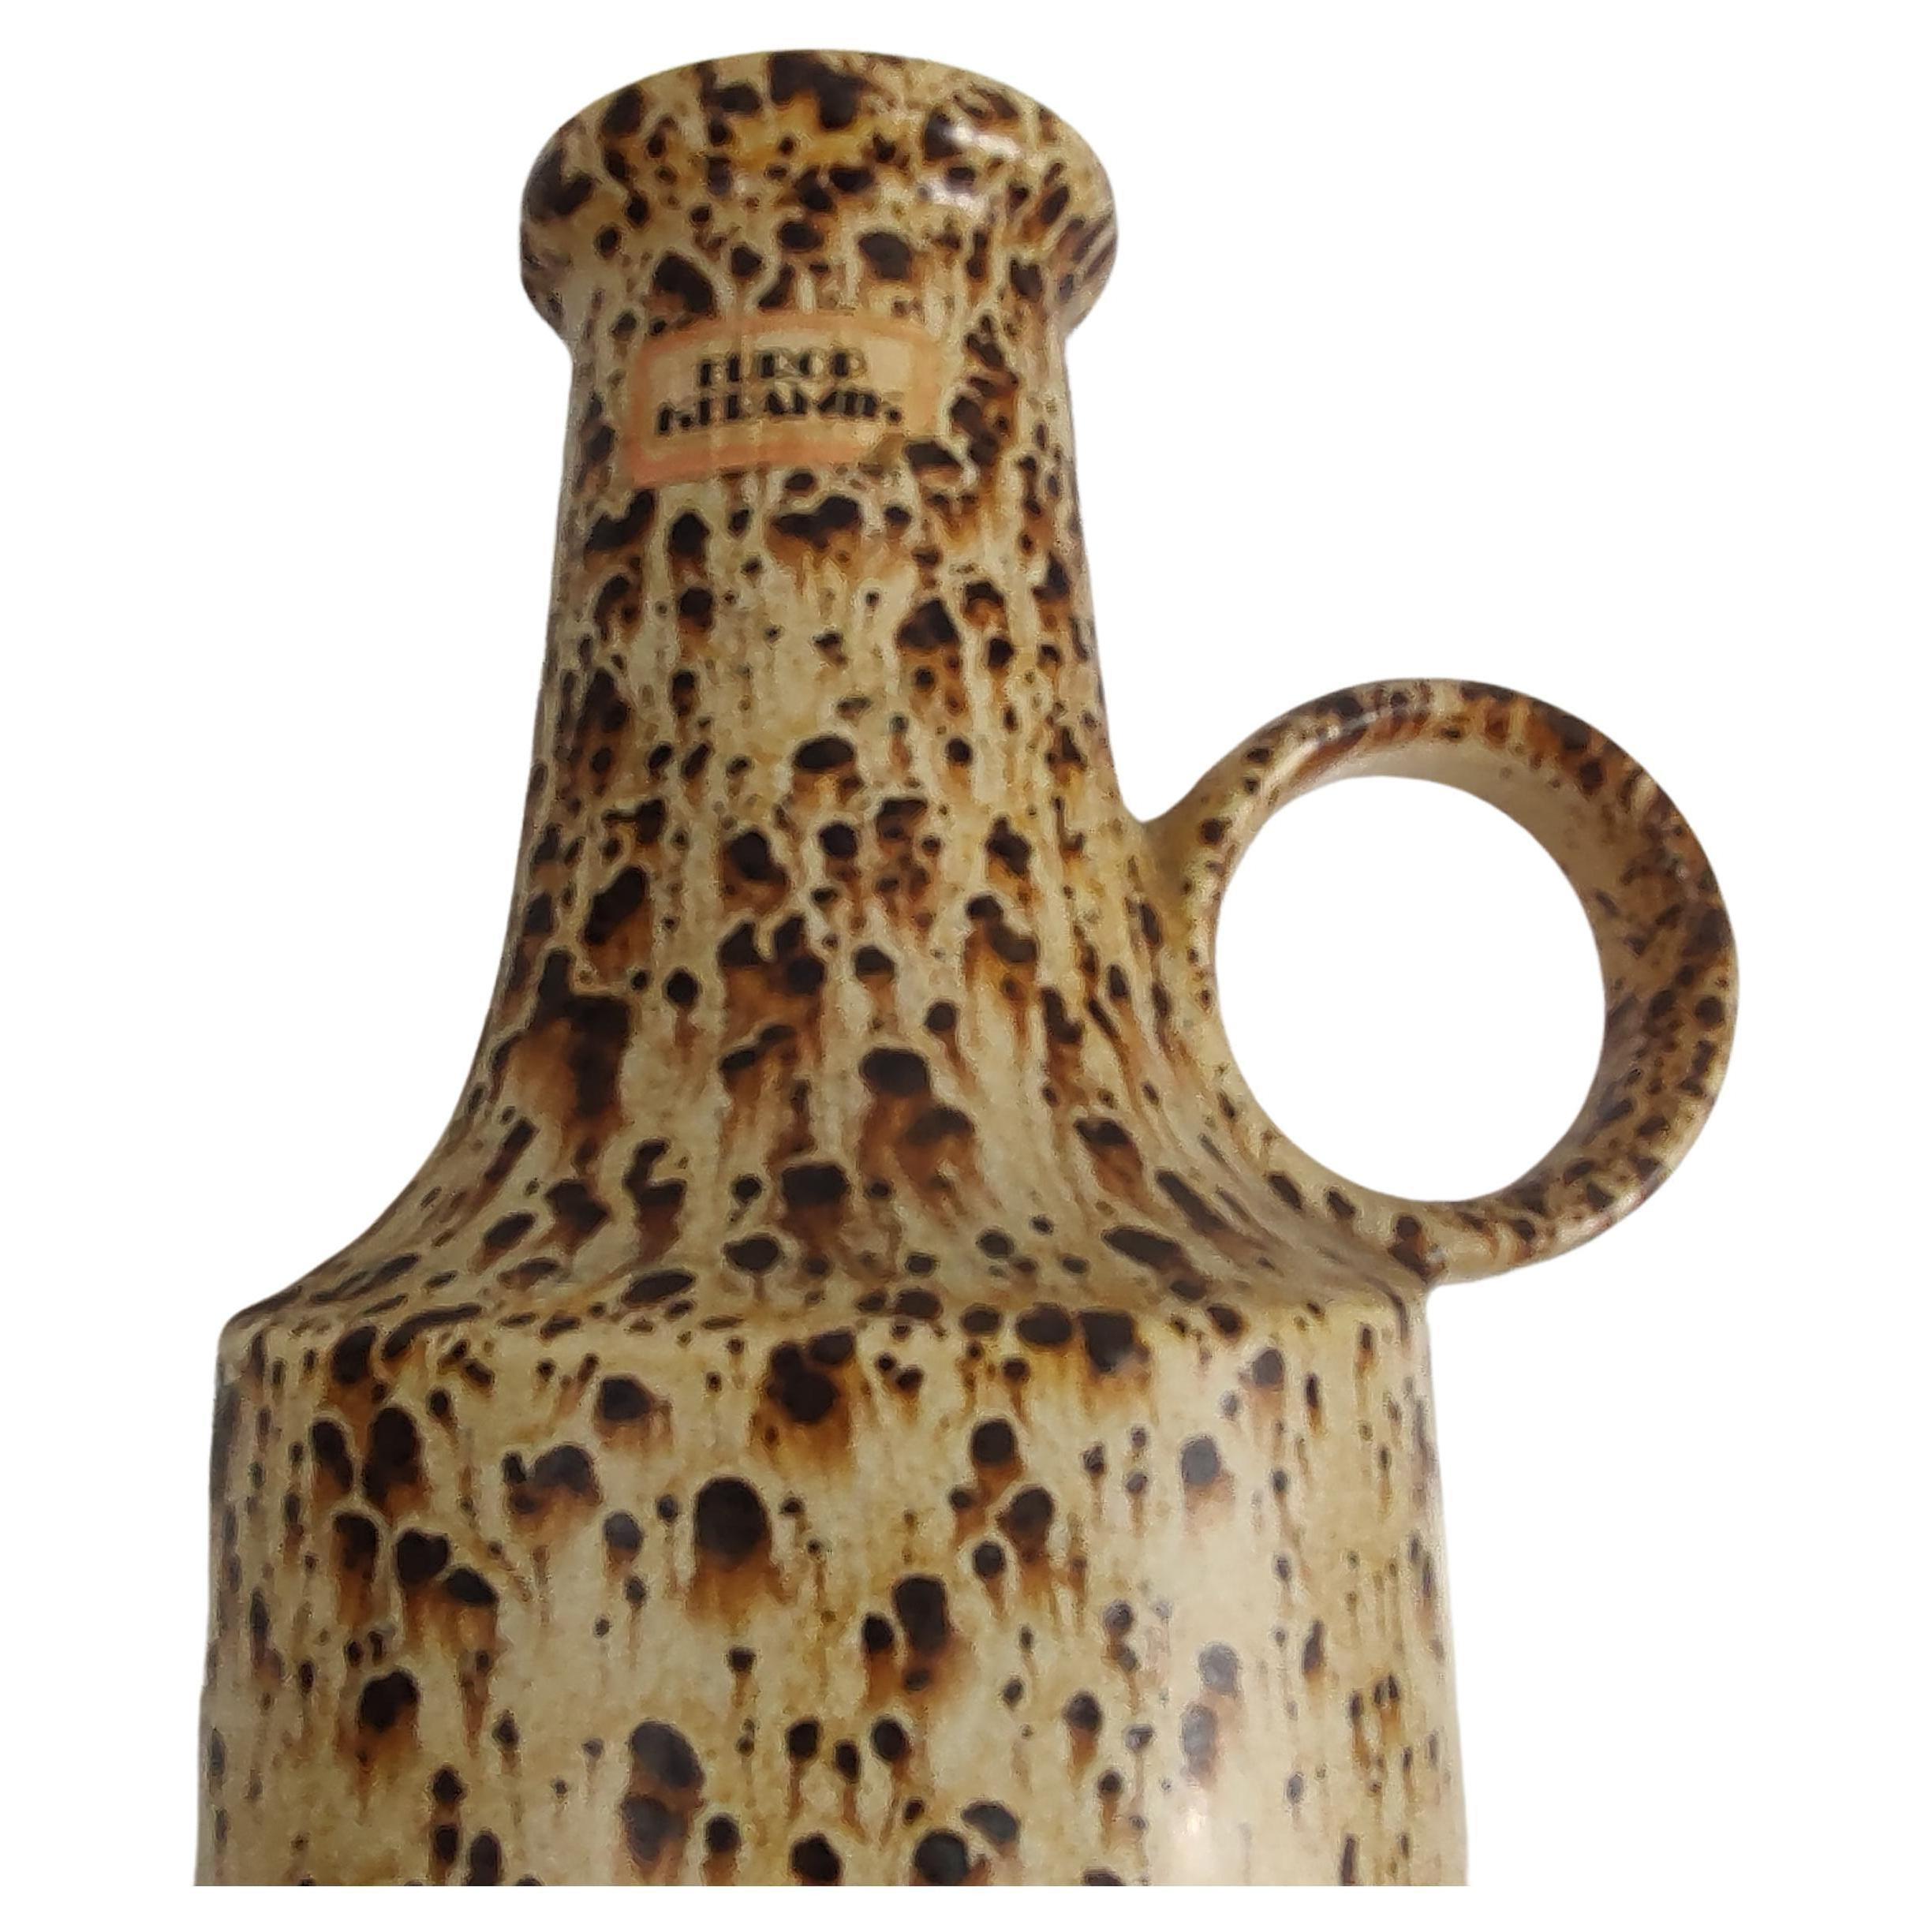 Fabelhafte hohe und schön glasierte Vase in Flaschenform von Scheurich Keramik, Westdeutschland um 1960. Spritzer-Motiv oben in Brauntönen. In ausgezeichnetem Vintage-Zustand mit minimalen Gebrauchsspuren, ein Flohbiss am Rand, siehe Bilder.